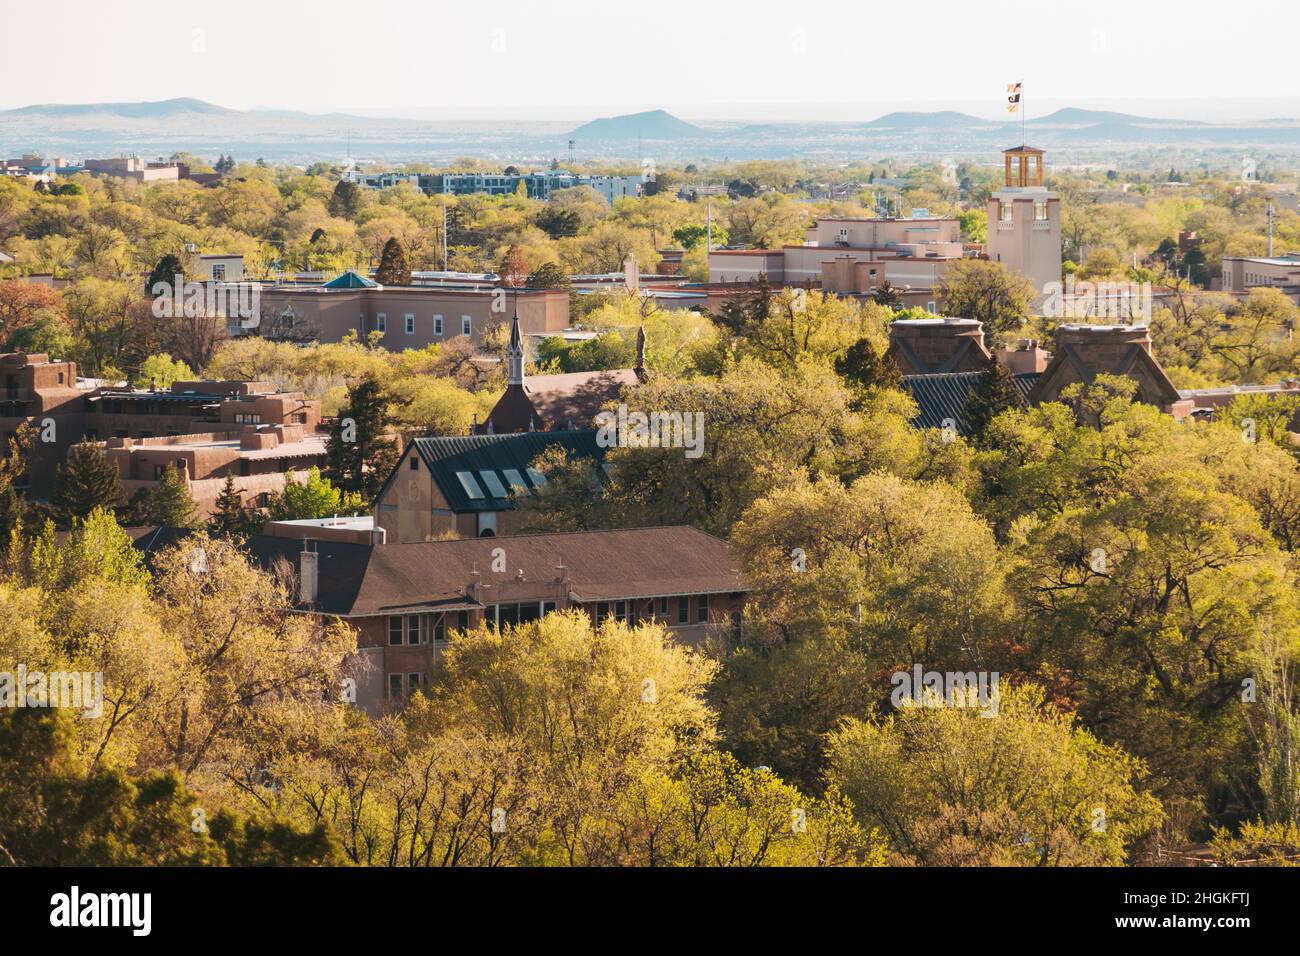 Ein Blick auf die Altstadt von Santa Fe, New Mexico, mit ihren Holz- und lehmbauten, die über die zahlreichen grünen Bäume blicken Stockfoto